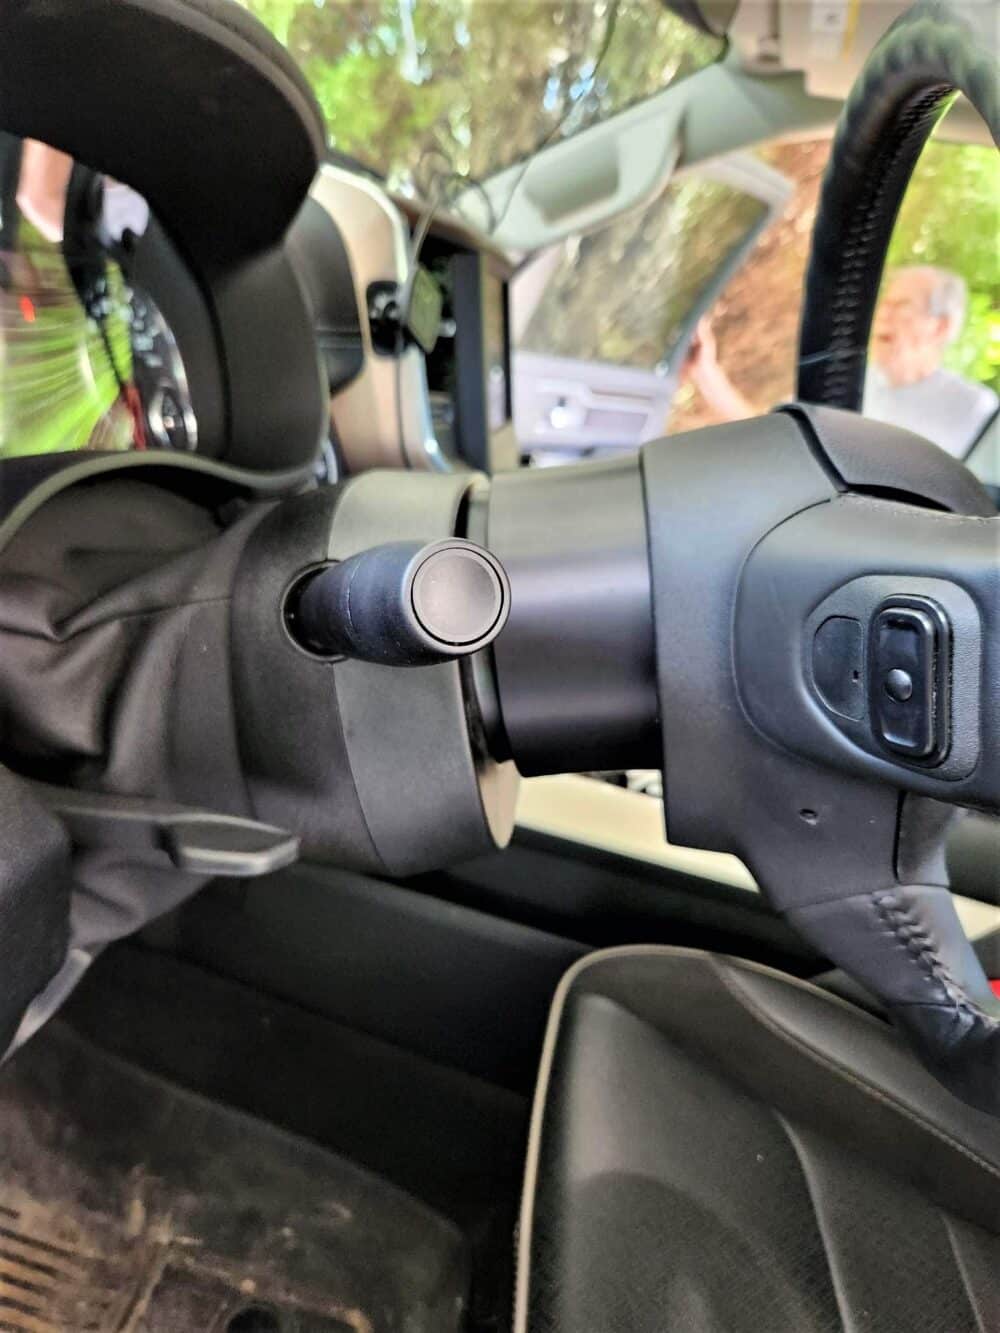 Ram 5 steering wheel spacer installed side view